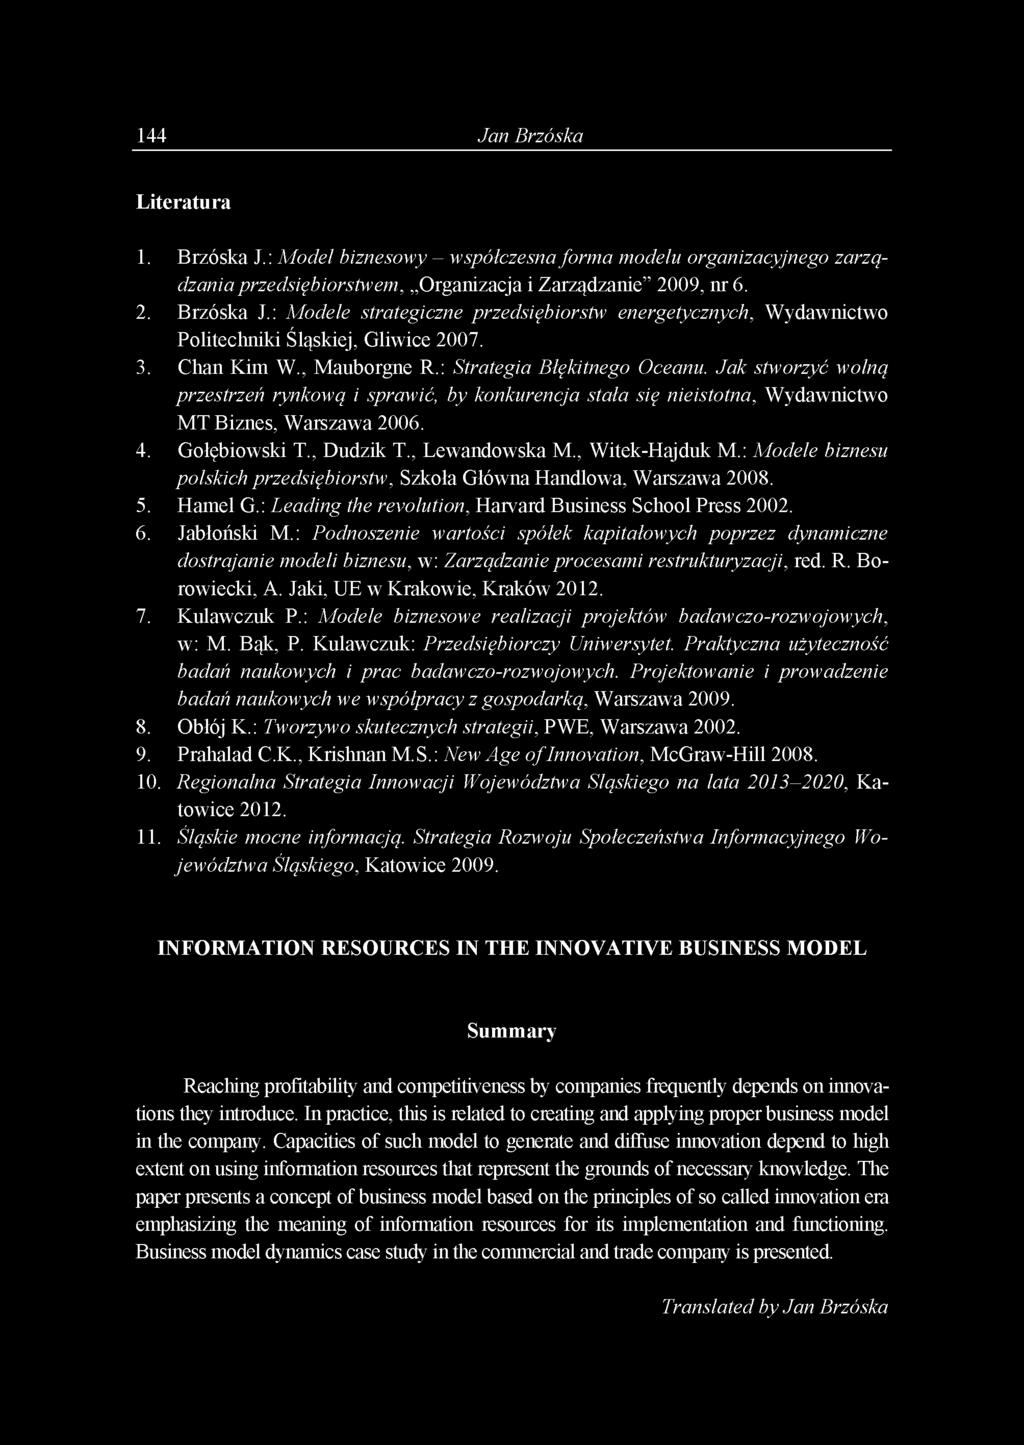 , Dudzik T., Lewandowska M., Witek-Hajduk M.: Modele biznesu polskich przedsiębiorstw, Szkoła Główna Handlowa, Warszawa 2008. 5. Hamel G.: Leading the revolution, Harvard Business School Press 2002.